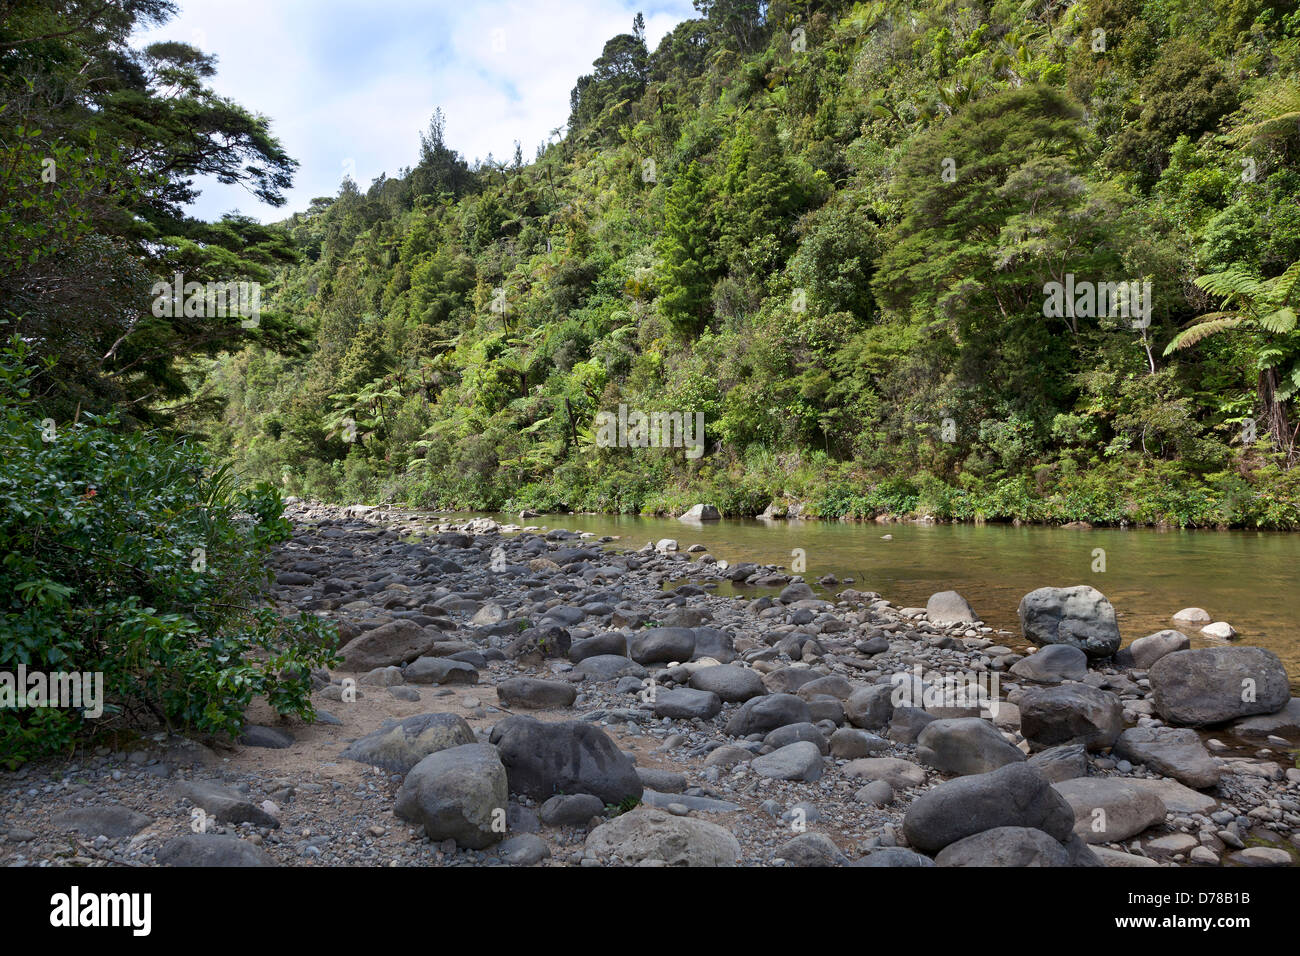 Whangaiterenga, Kauaeranga valley, Coromandel,New Zealand Stock Photo